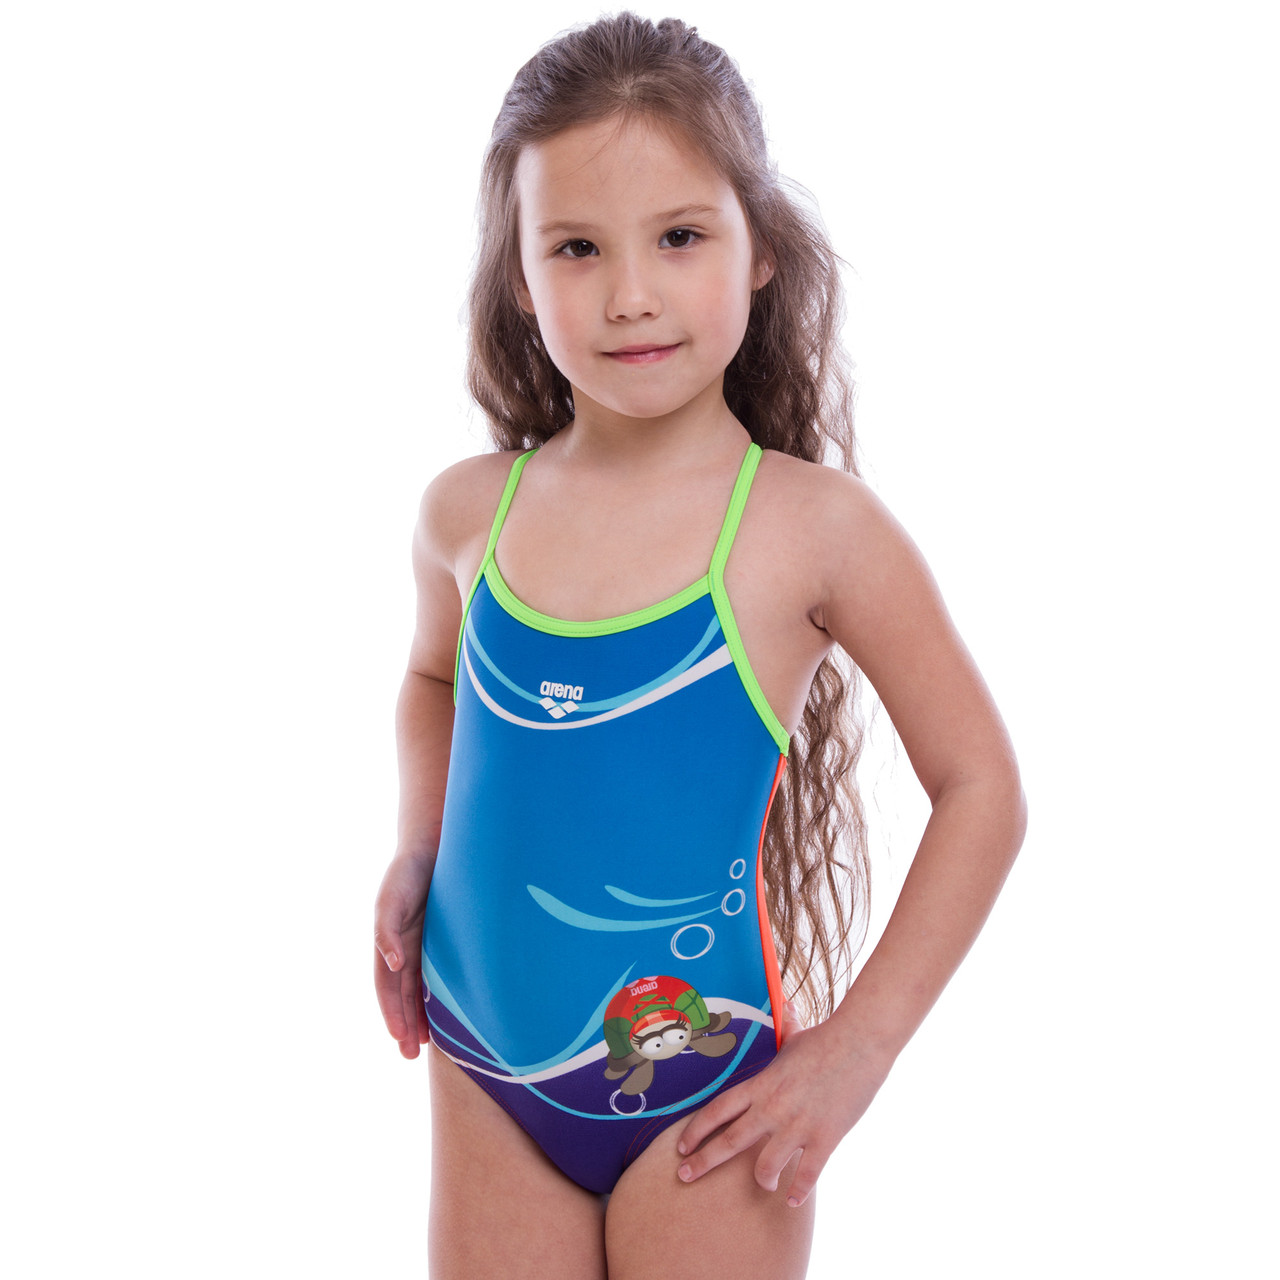 

Купальник для плавания слитный детский ARENA MADEUP KIDS AR-23171-33 возраст 2-5 лет синий-оранжевый